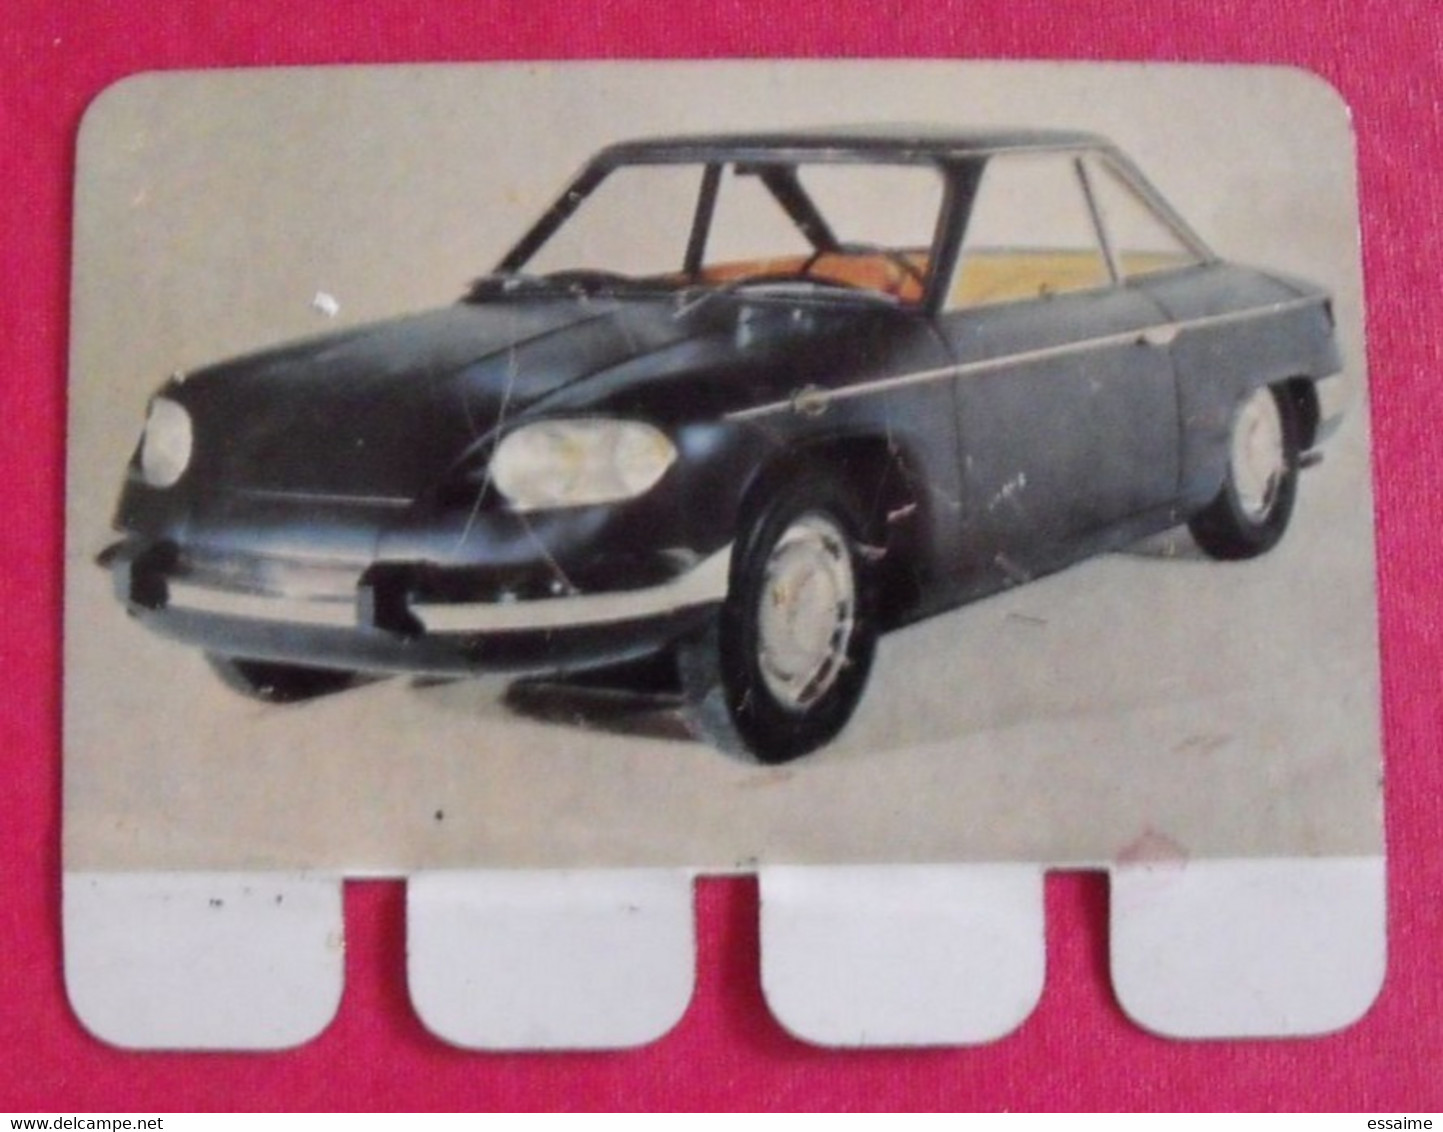 Panhard 24 CT 1964. Plaquette En Tôle COOP N° 48. "l'auto à Travers Les âges" - Tin Signs (after1960)